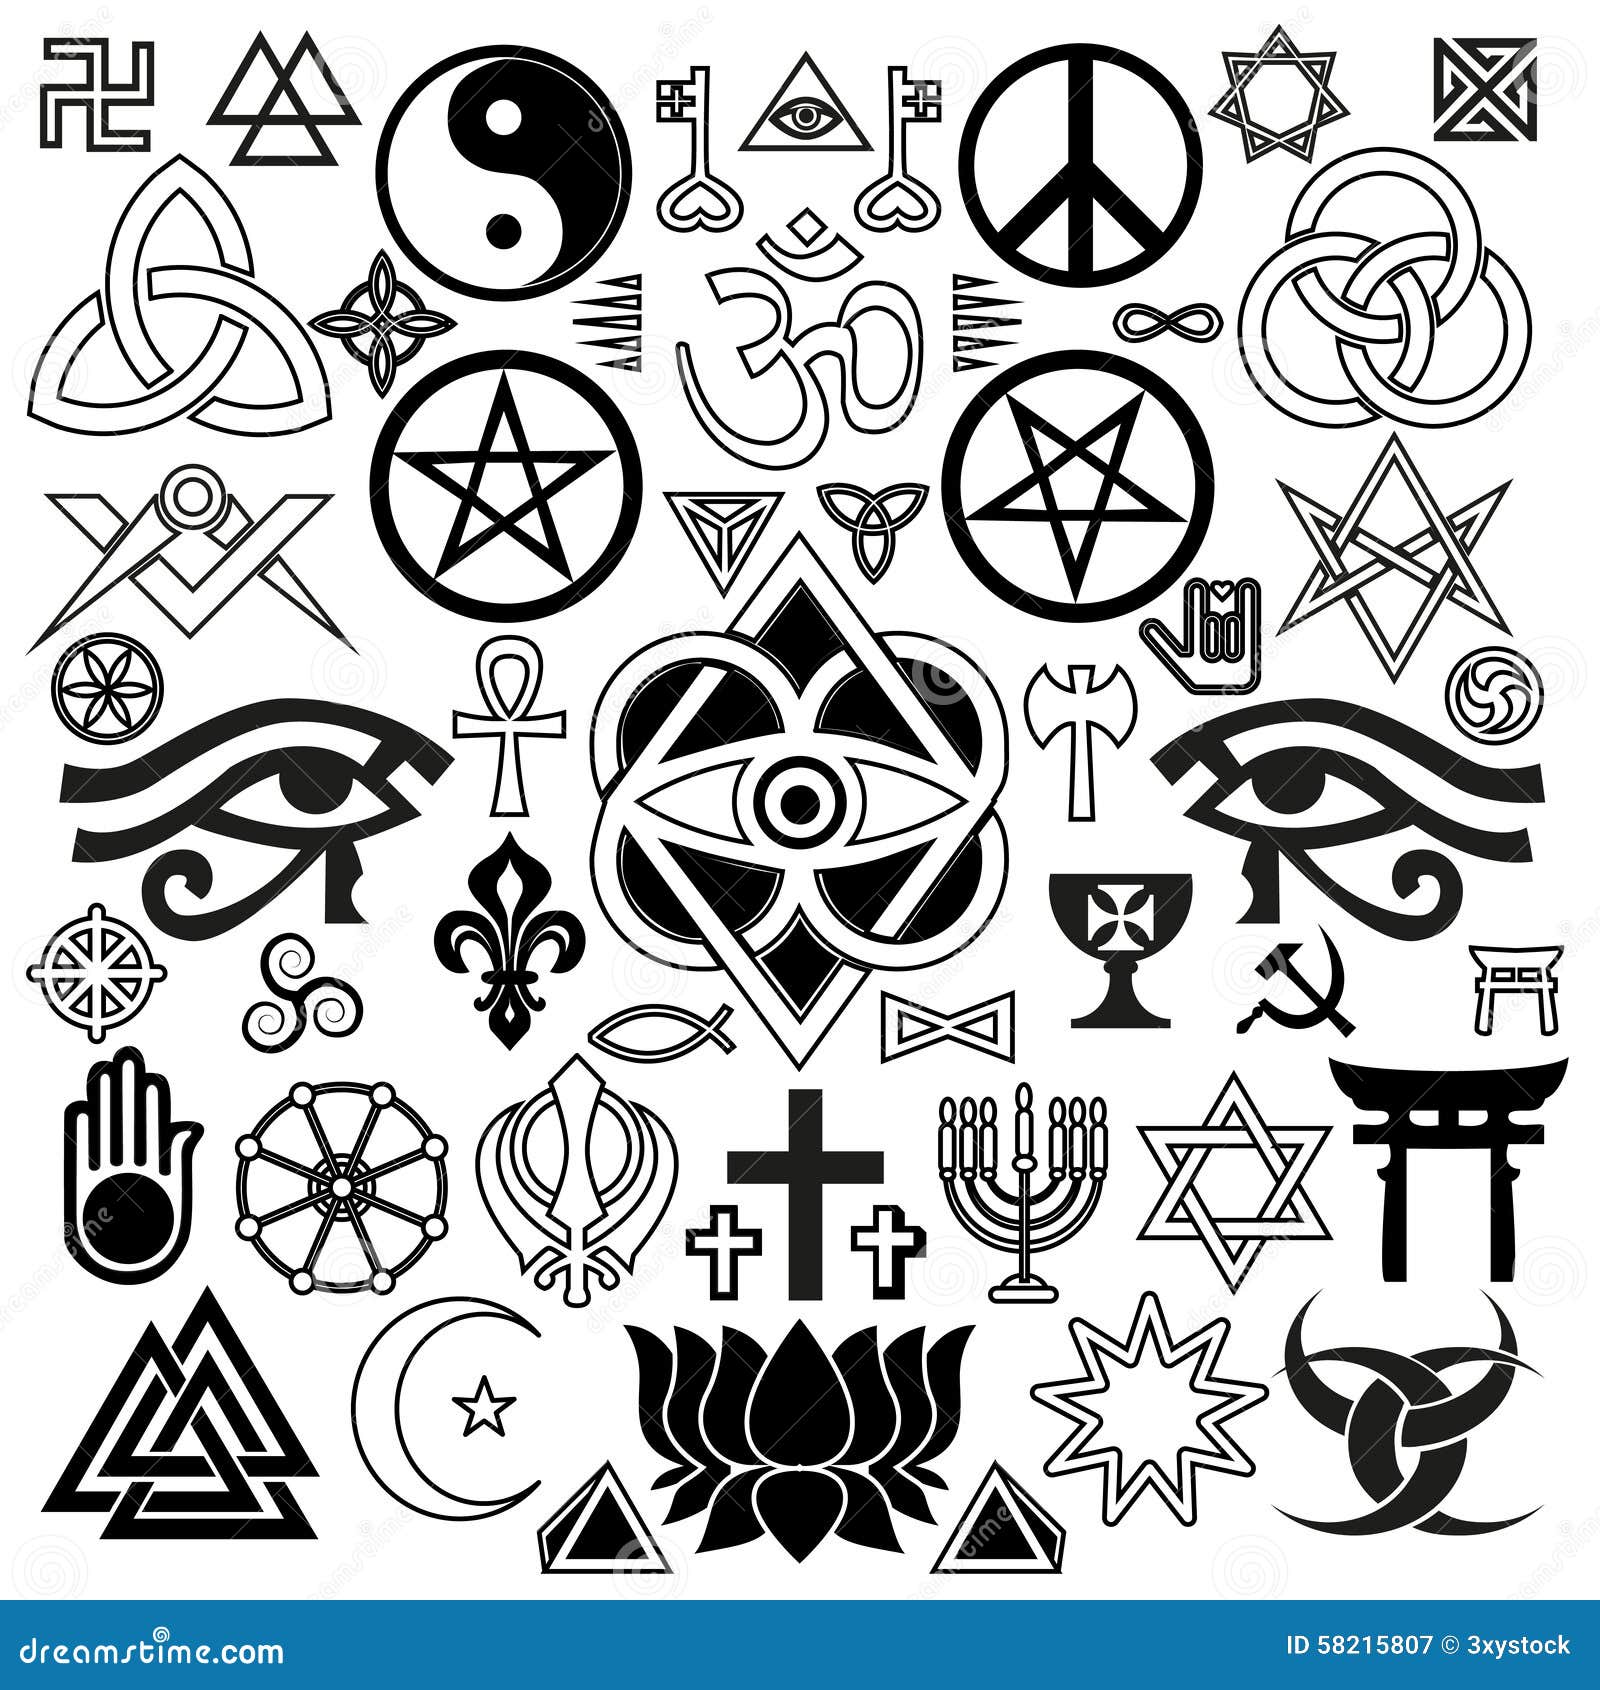 Символический знак в современной жизни. Оккультные символы. Символические знаки. Эзотерические знаки и символы. Простые символы.